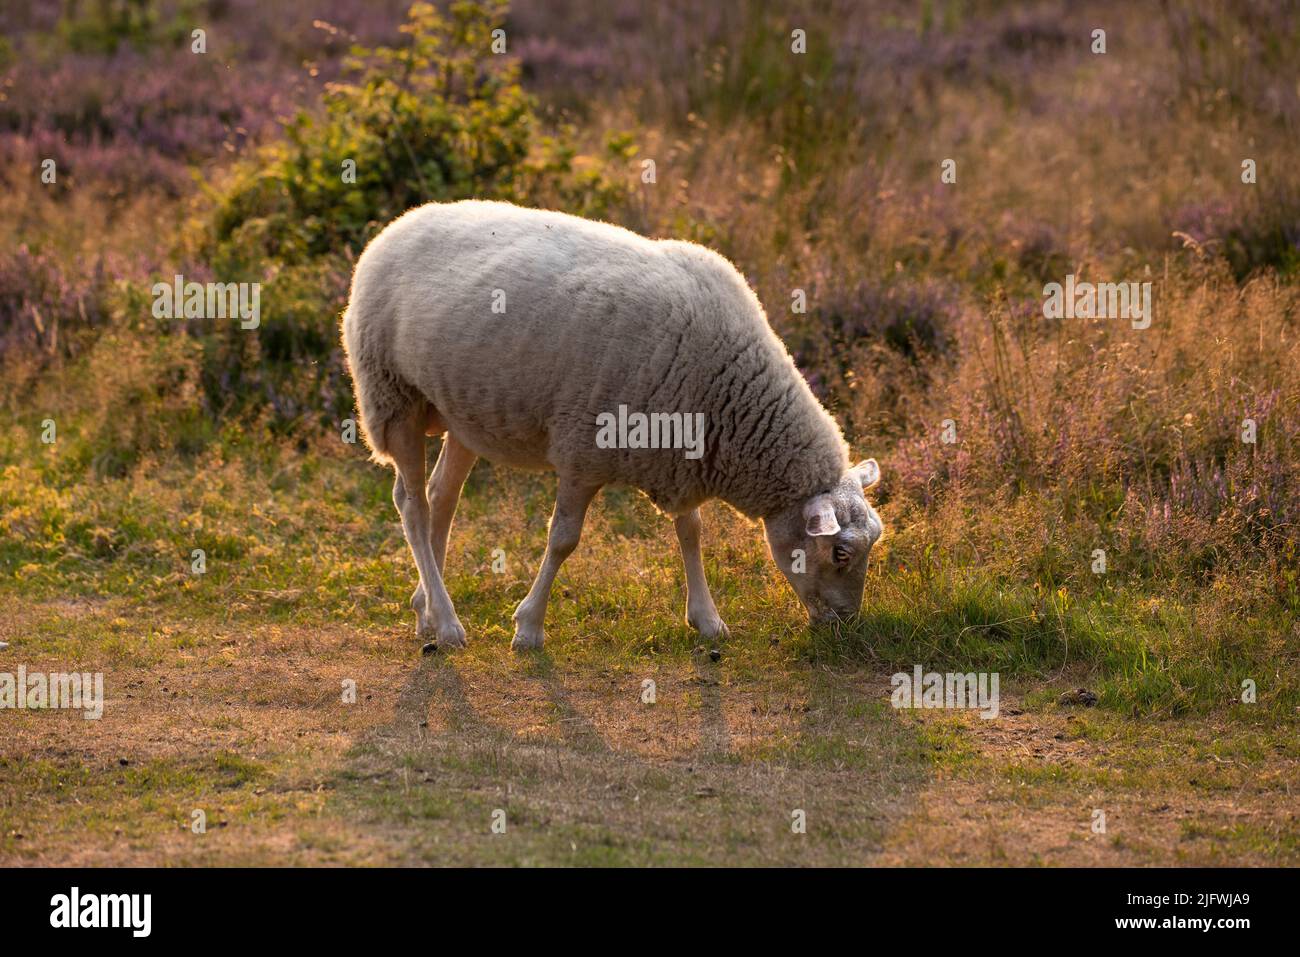 Una oveja pastando en un campo por la mañana. Un animal domesticado de granja comiendo hierba verde en un prado fresco de brezo. Cordero o pasto de ganado en un Foto de stock